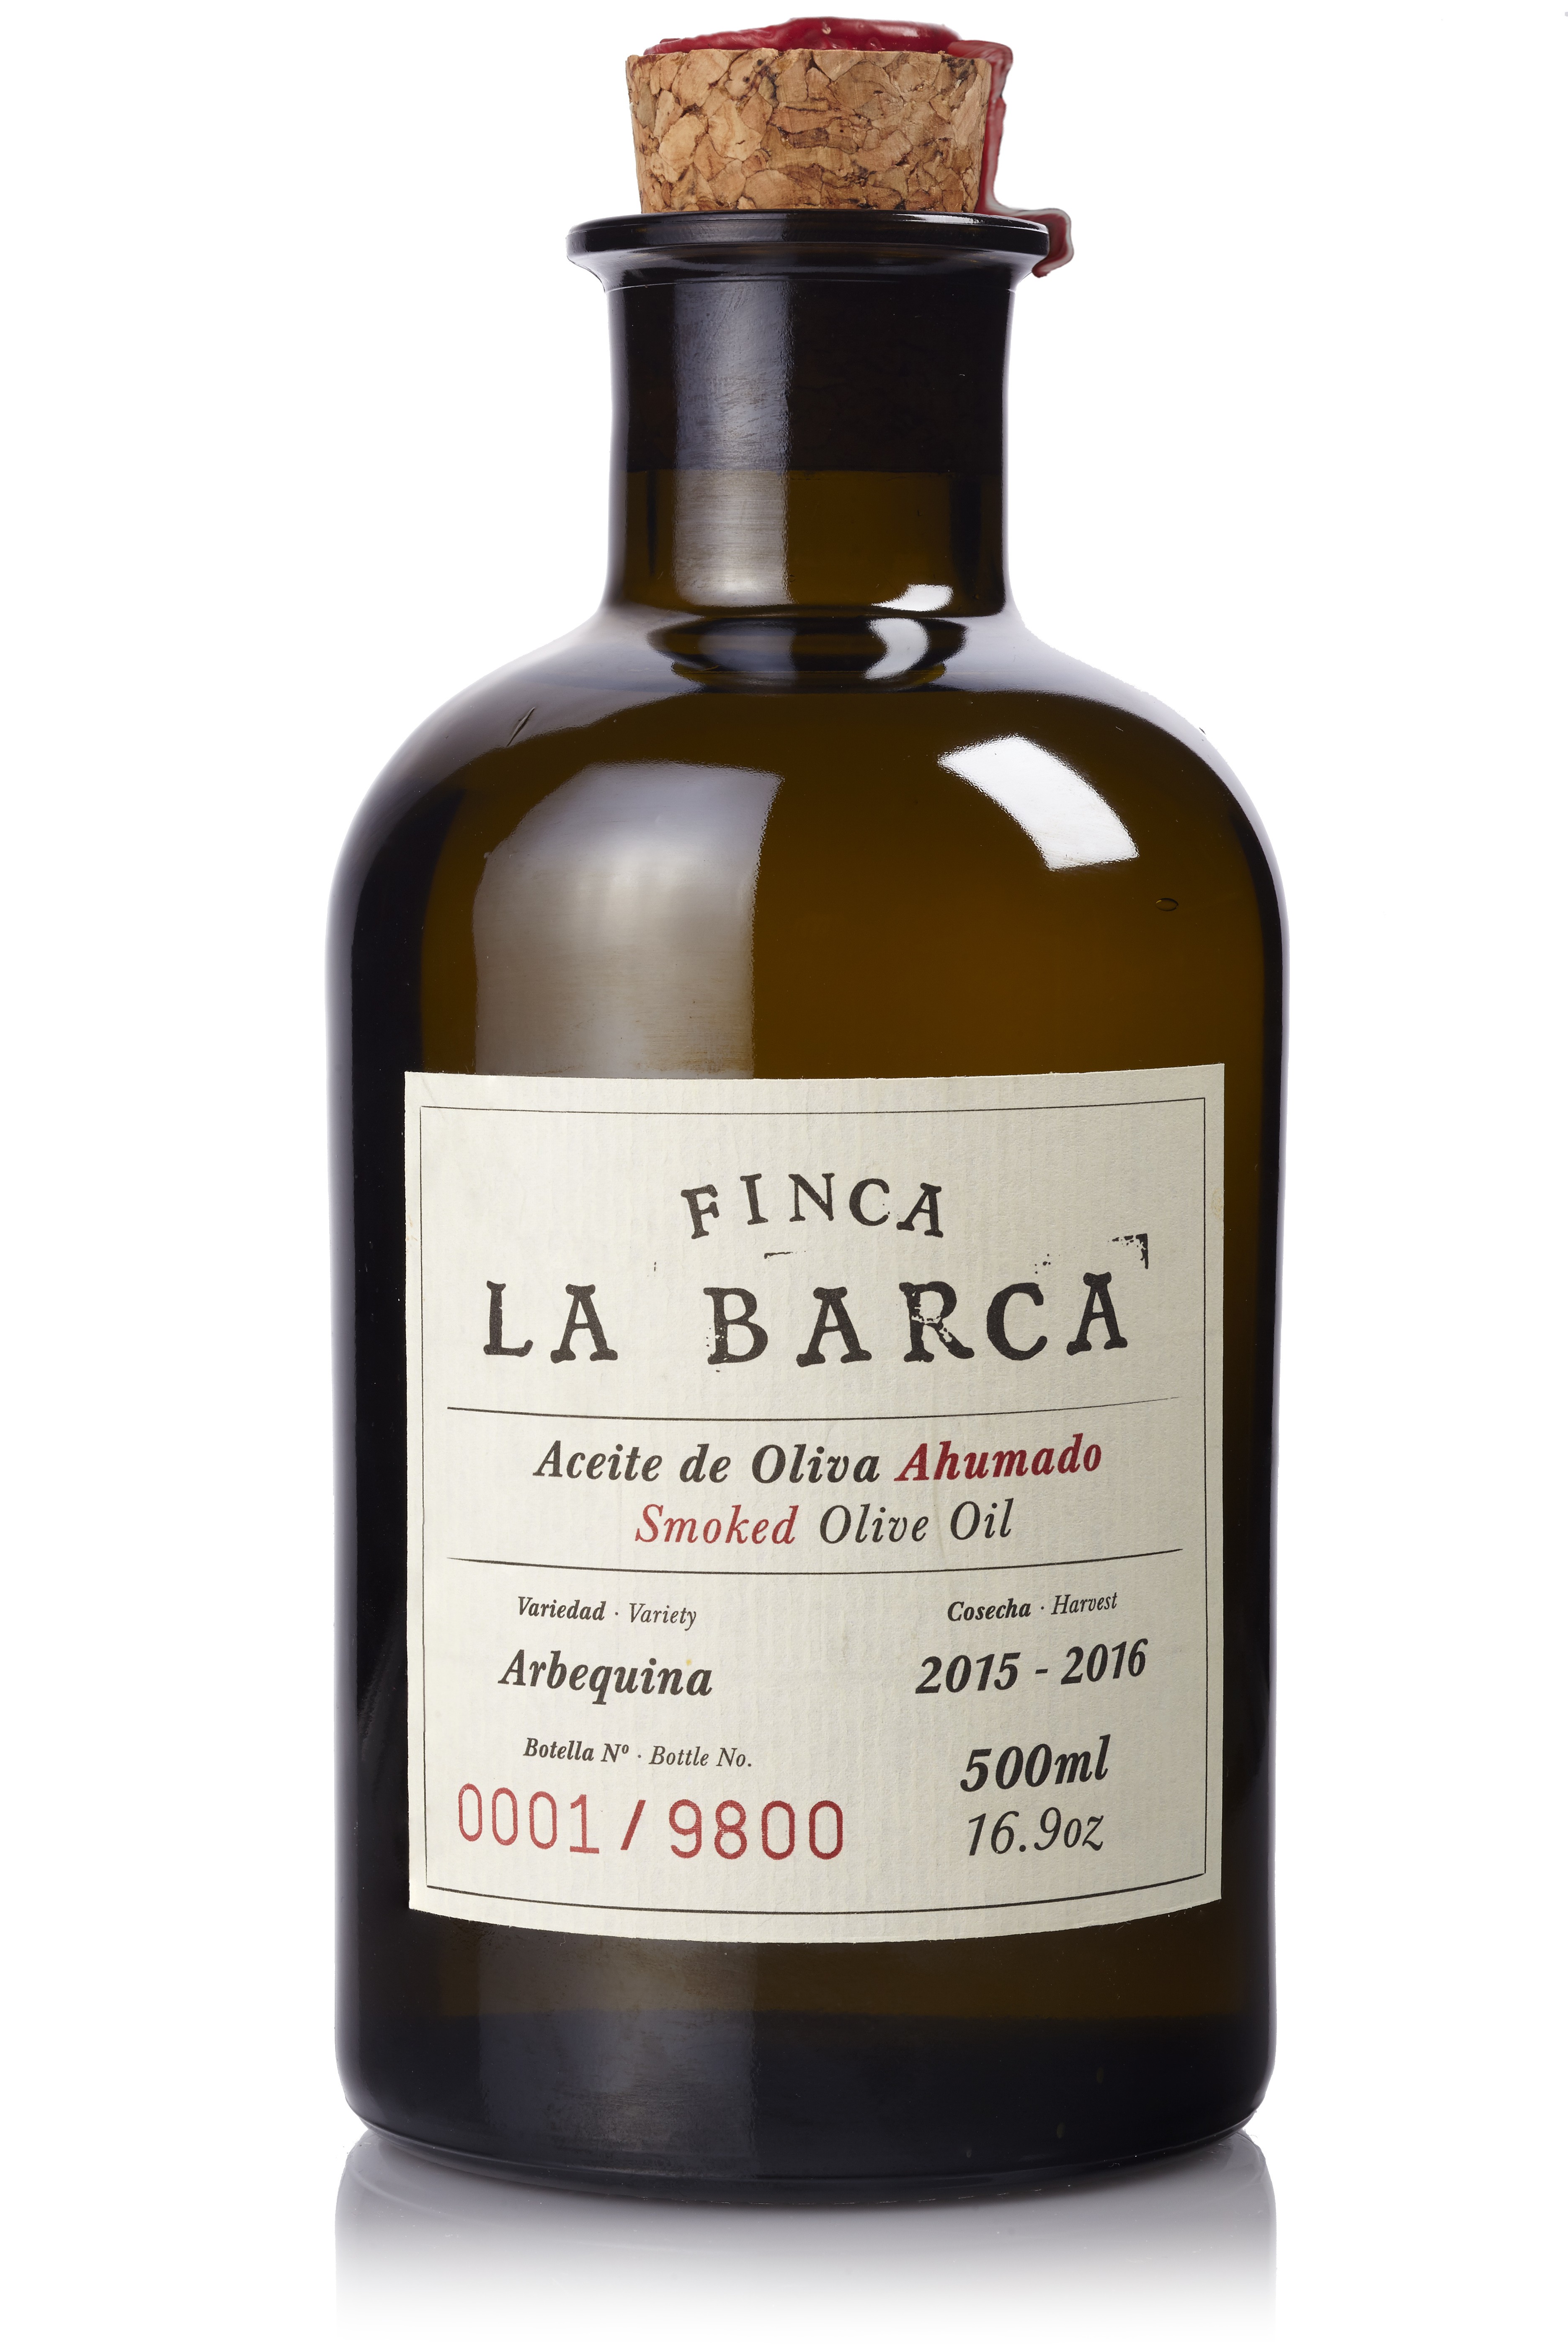 Aceite de Oliva Ahumado "Finca La Barca" botella 500 ml.